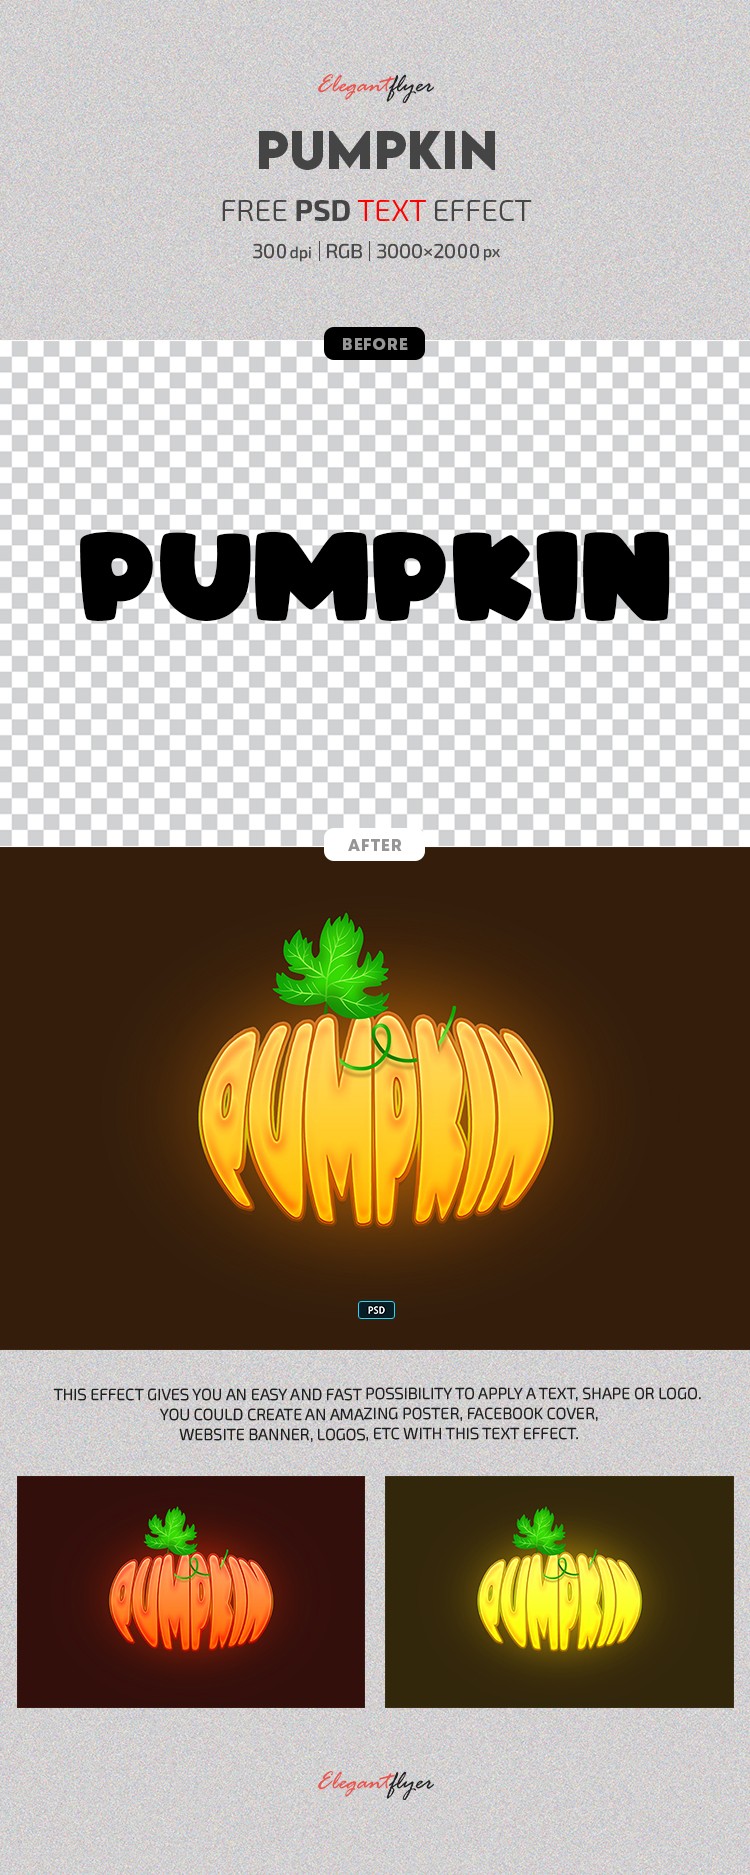 Pumpkin Text Effect by ElegantFlyer